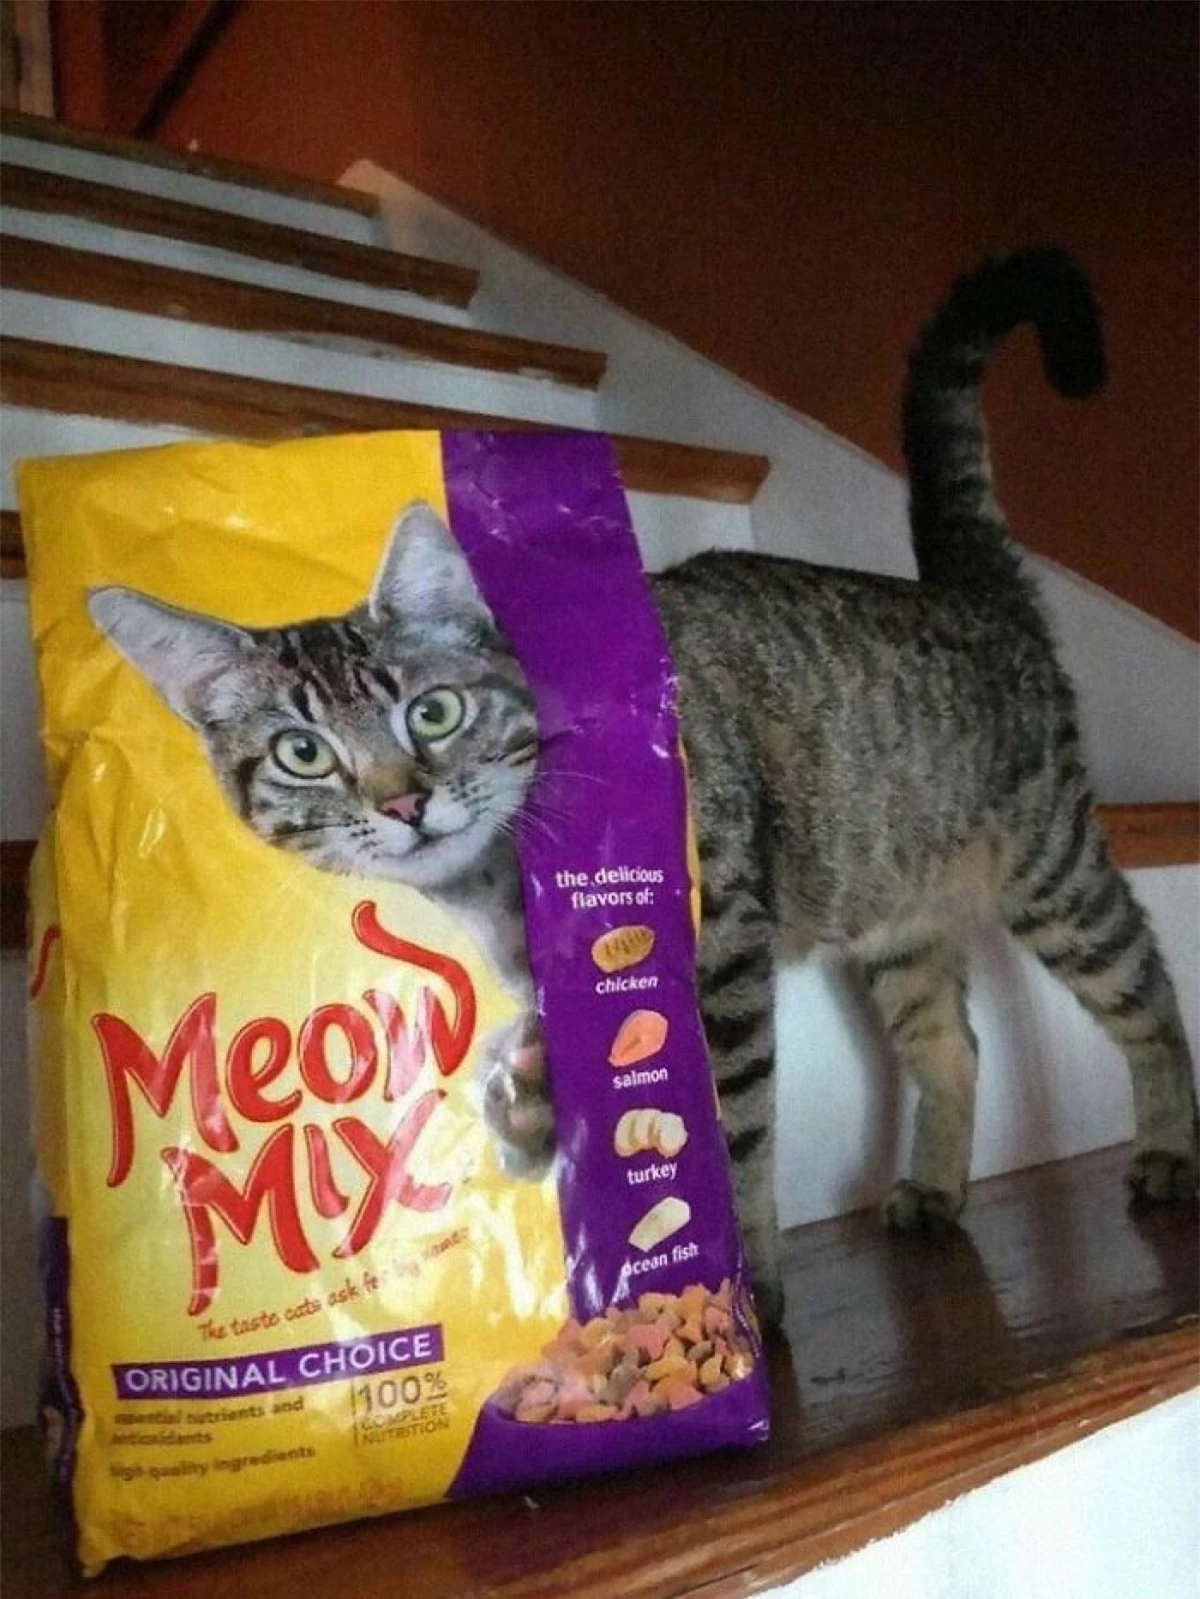 Hình ảnh trùng hợp đến lạ kỳ. Chú mèo như thể bước ra từ túi thức ăn.